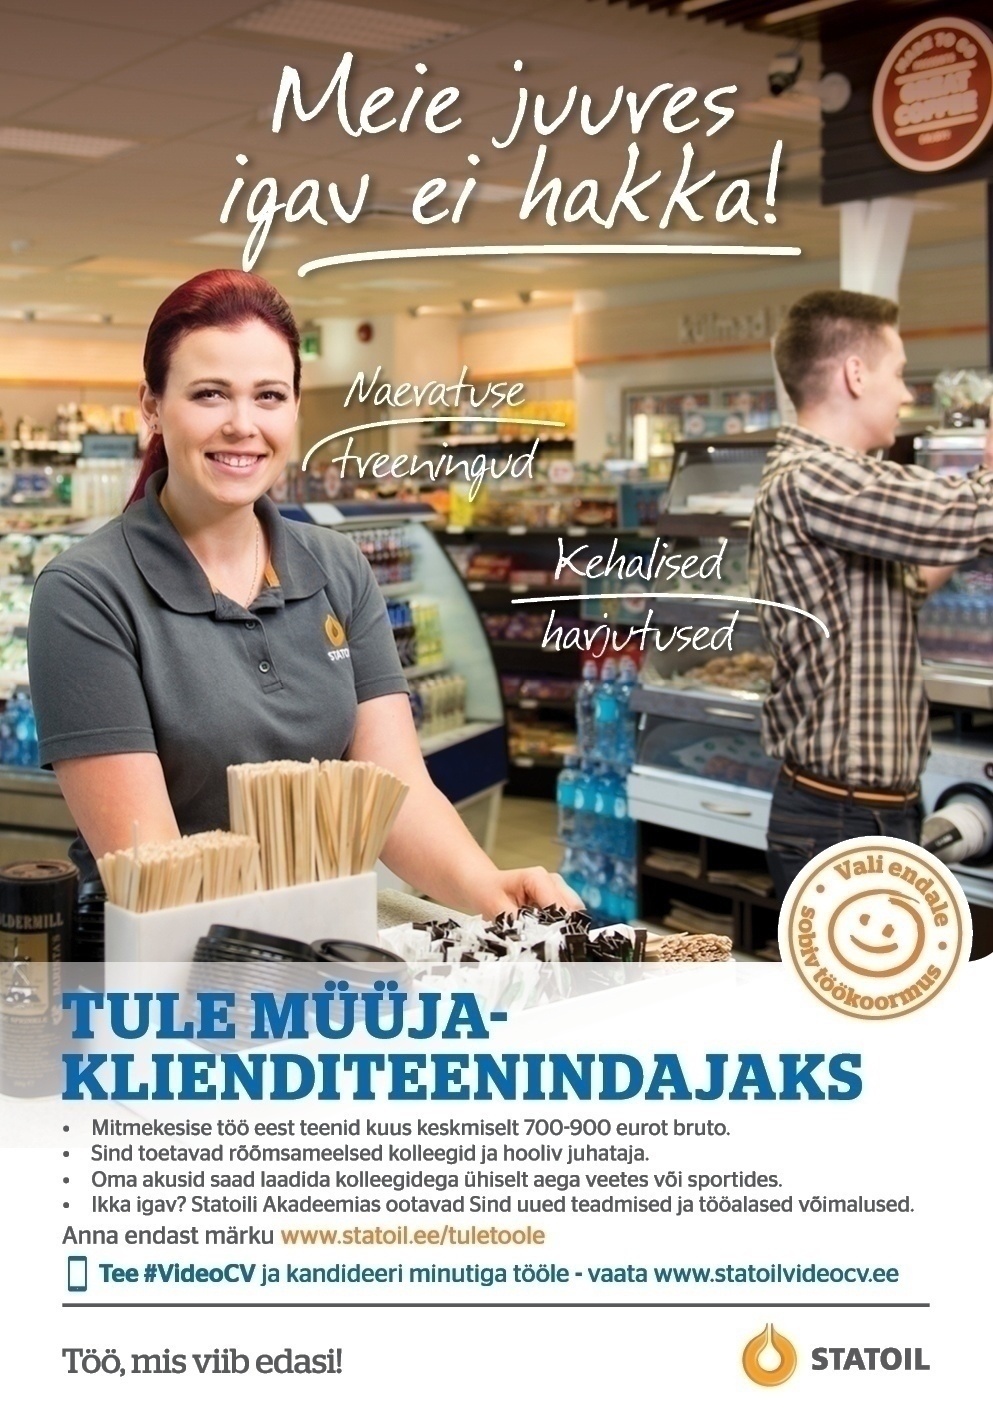 Circle K Eesti AS Müüja- klienditeenindaja Tartu teenindusjaamadesse